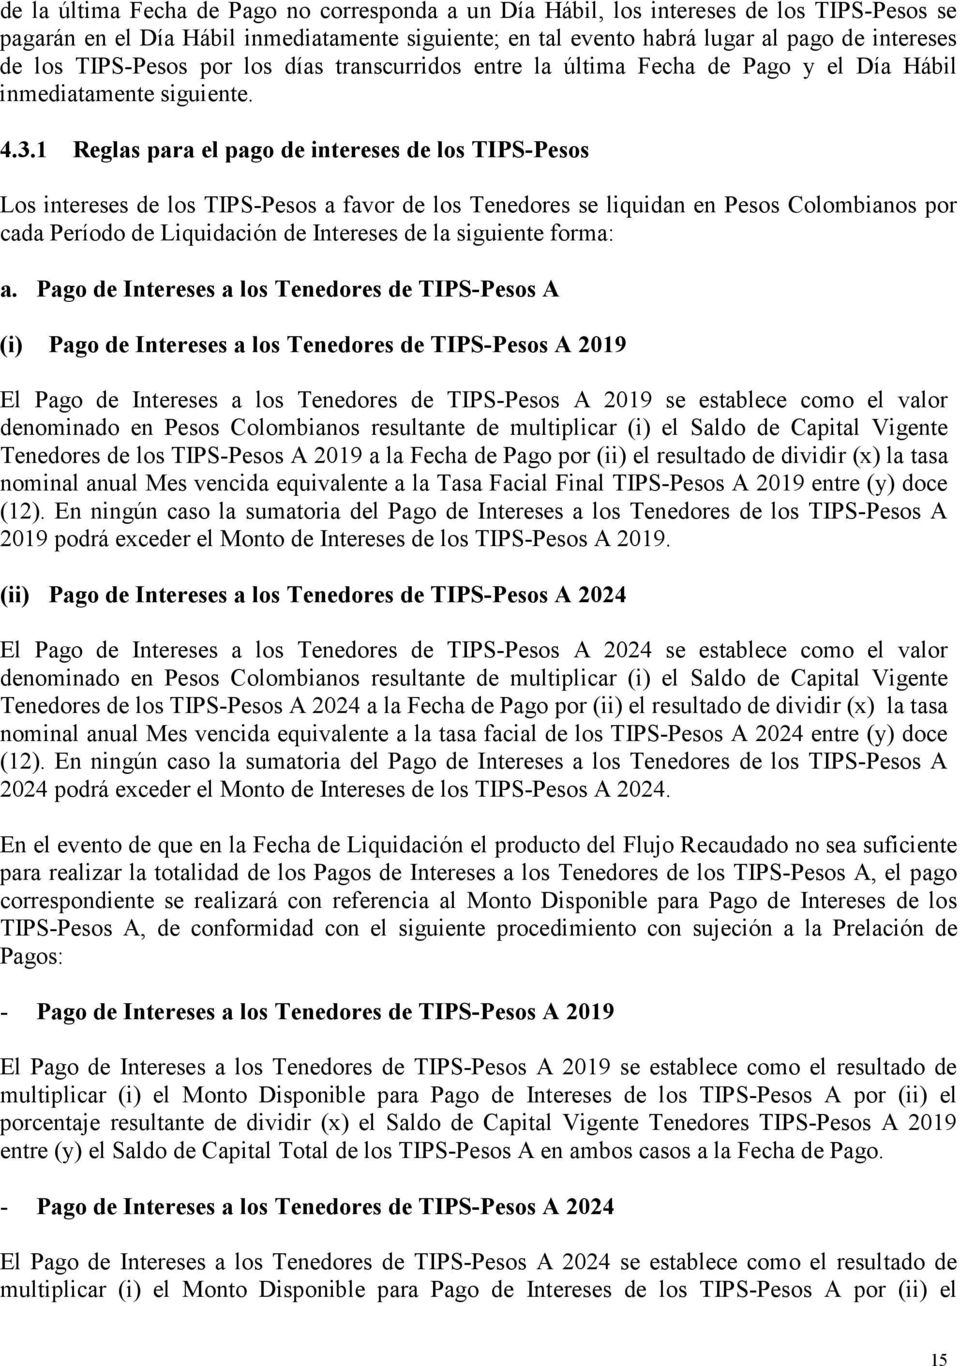 1 Reglas para el pago de intereses de los TIPS-Pesos Los intereses de los TIPS-Pesos a favor de los Tenedores se liquidan en Pesos Colombianos por cada Período de Liquidación de Intereses de la